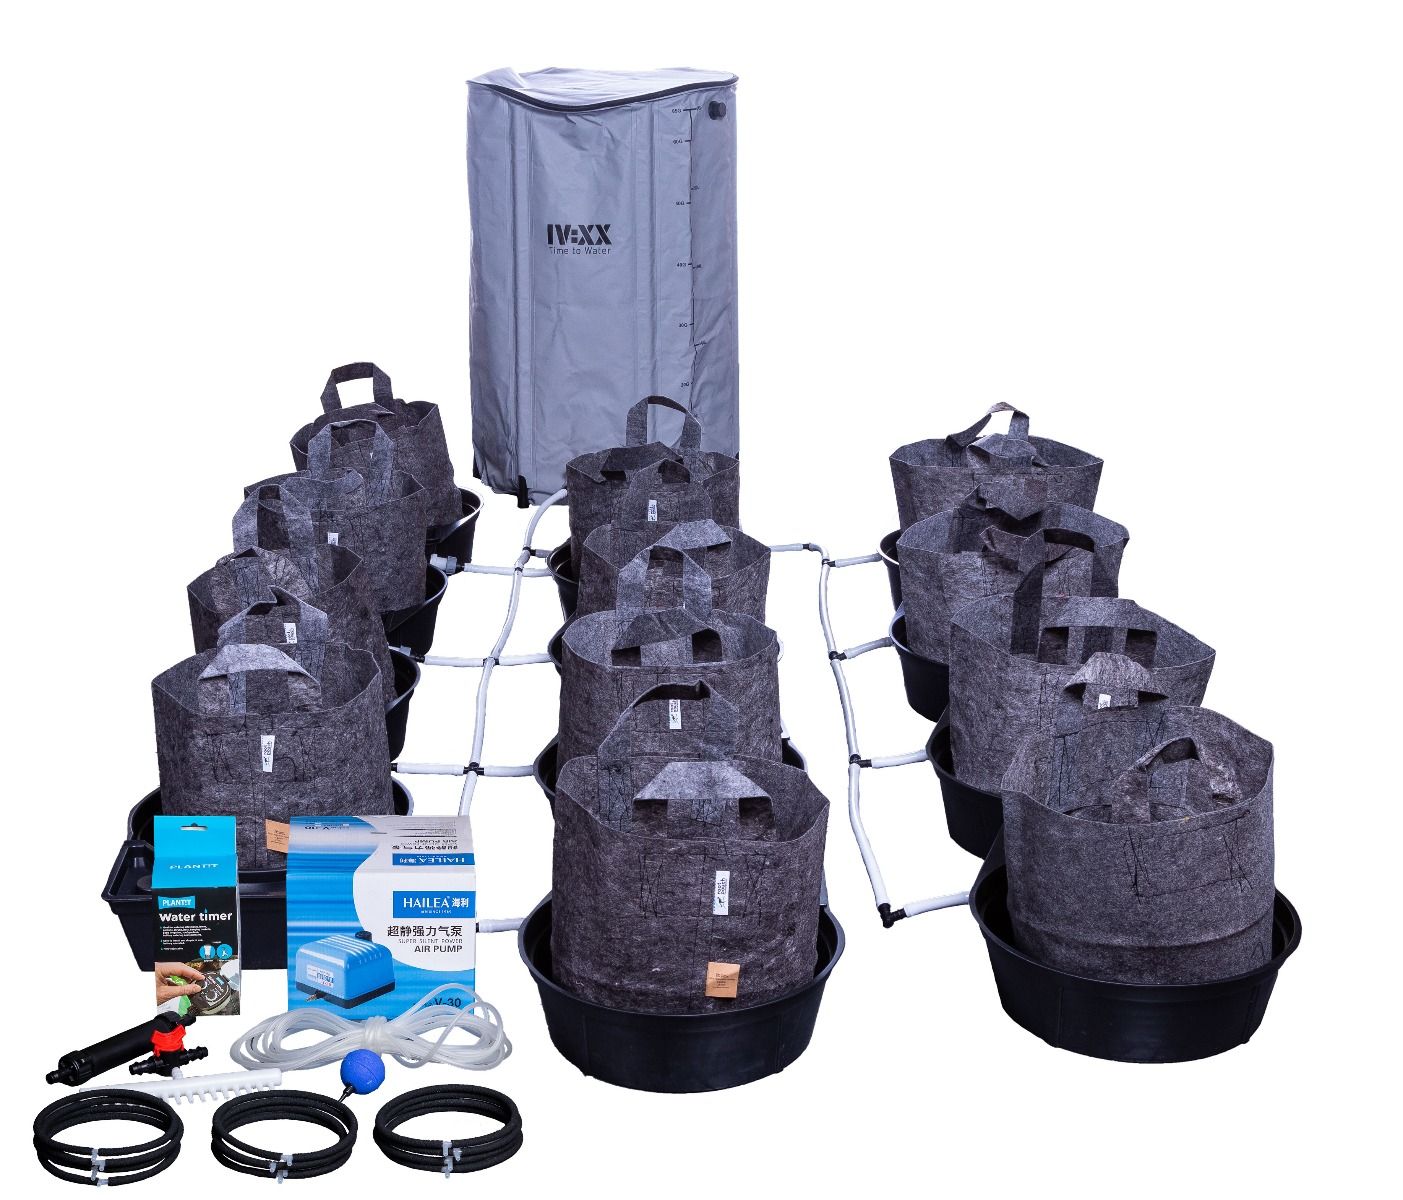 MegaPot Single Pot 56L Complete Kits